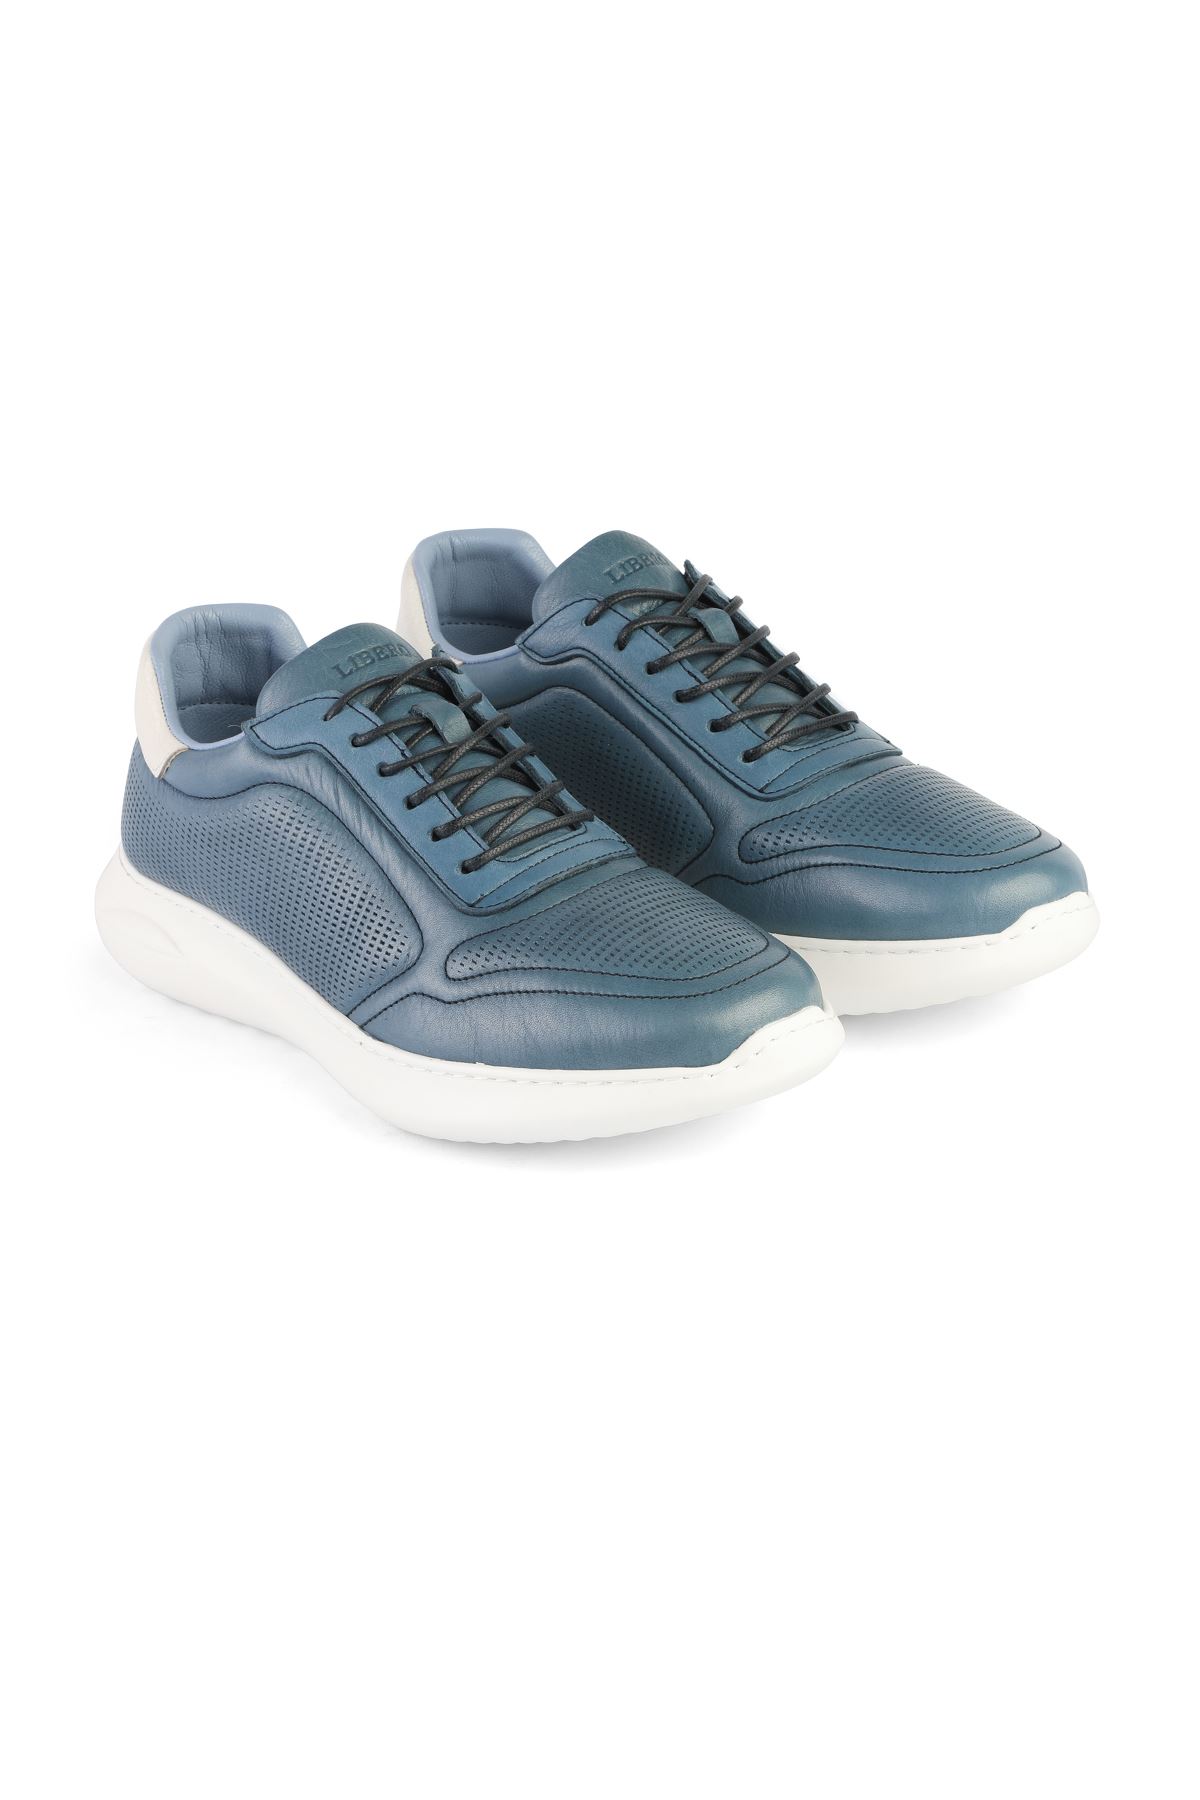 Libero 3401 Blue Sports Shoes